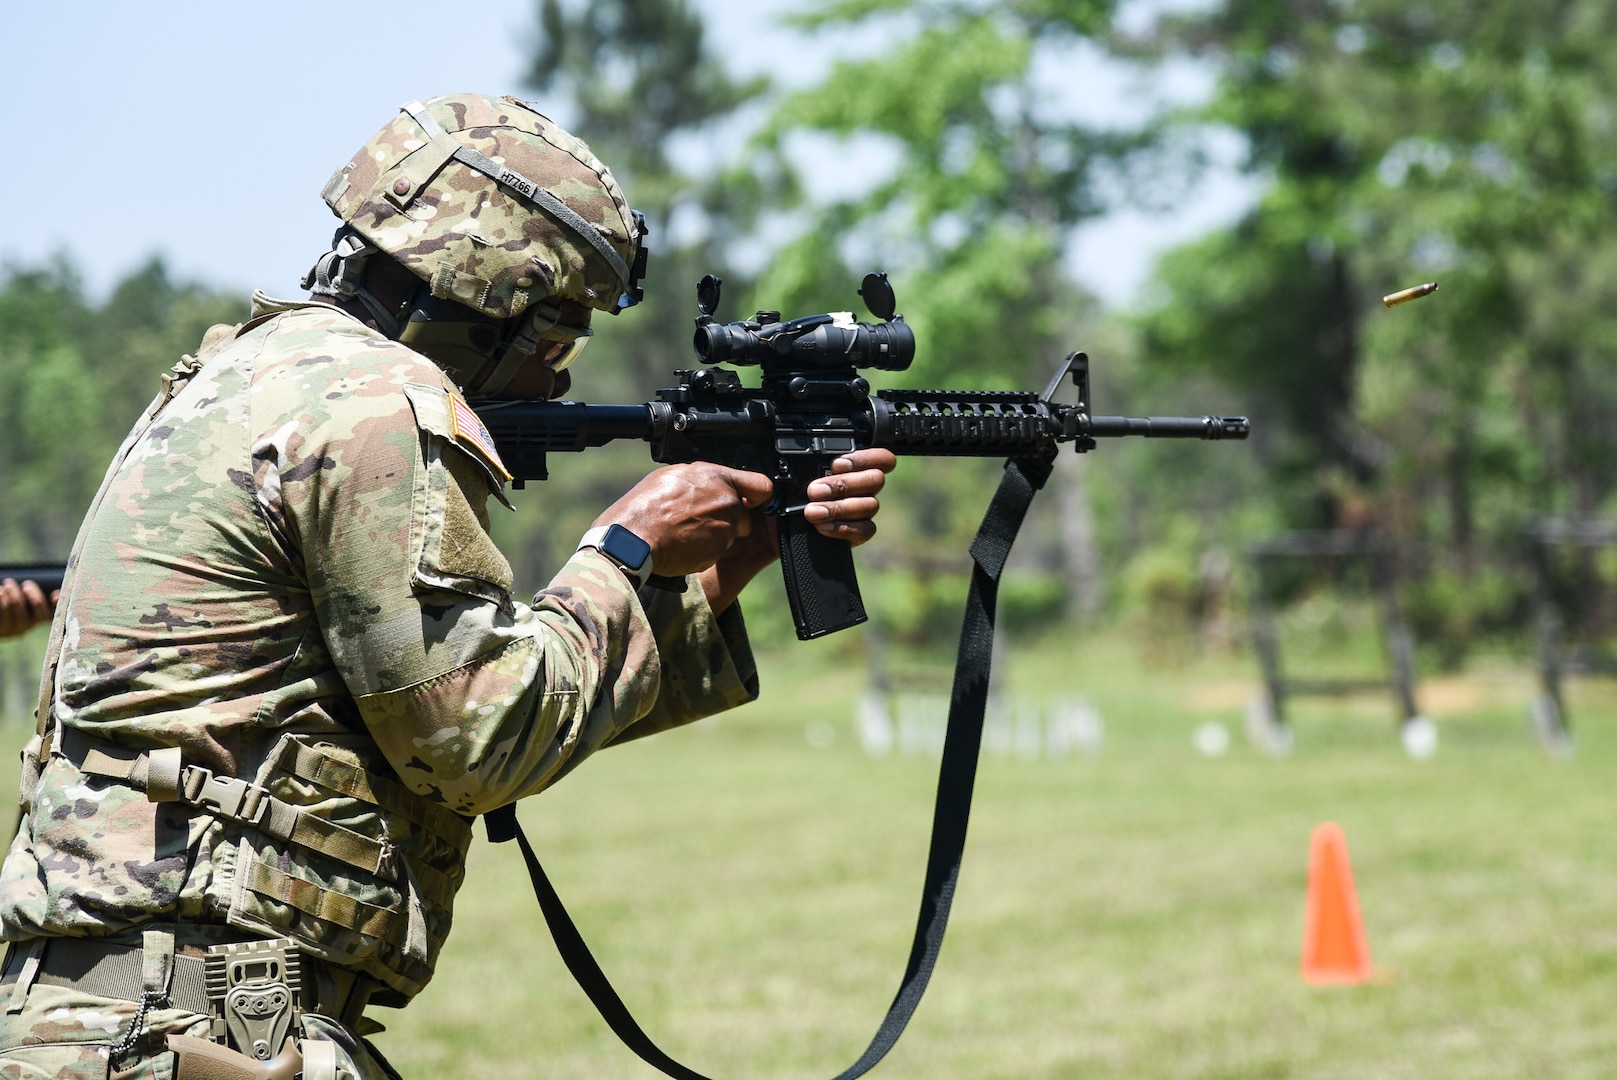 VNG marksmanship match held at Fort Pickett